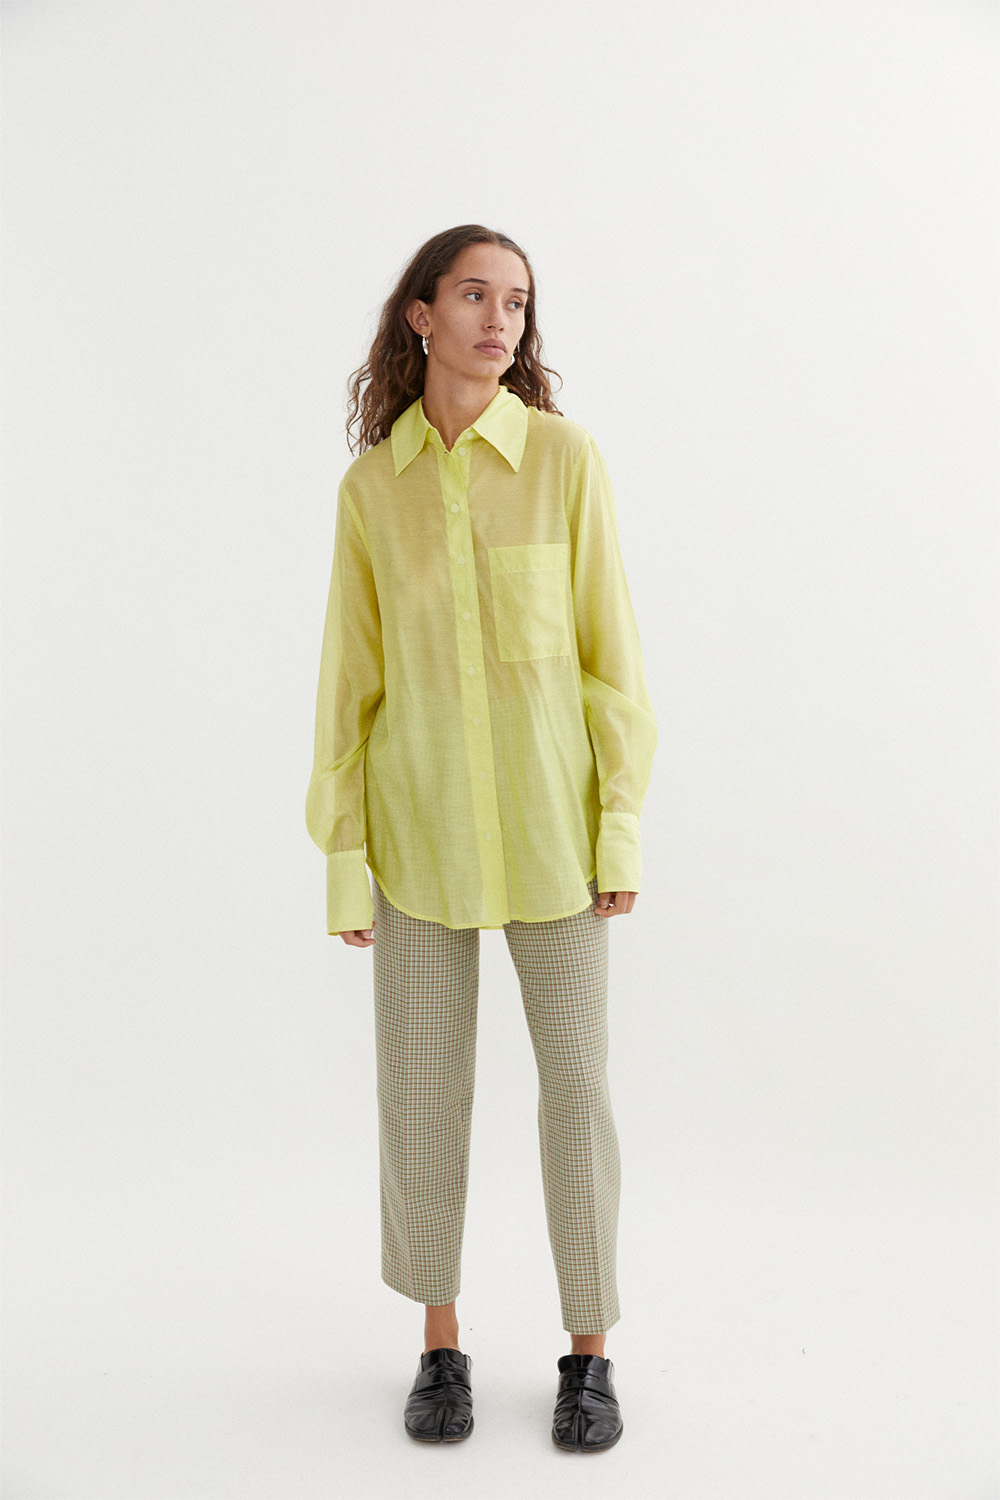 Leonie Shirt in Lemon by BLANCA